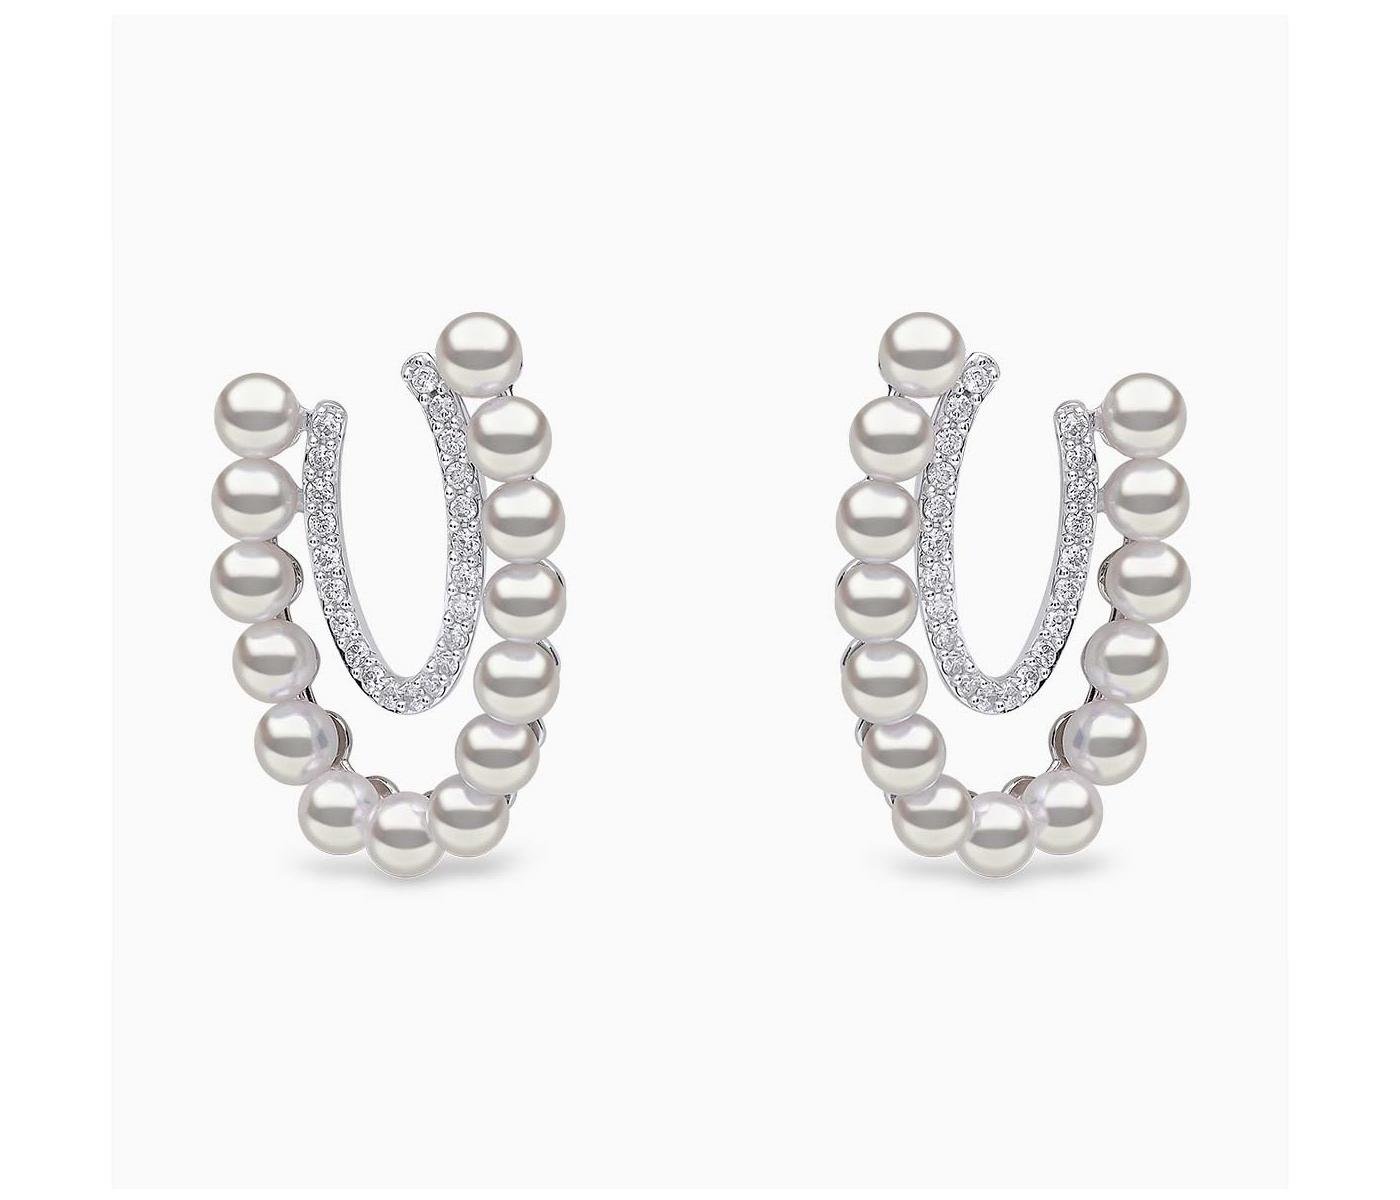 Earrings by Yoko London